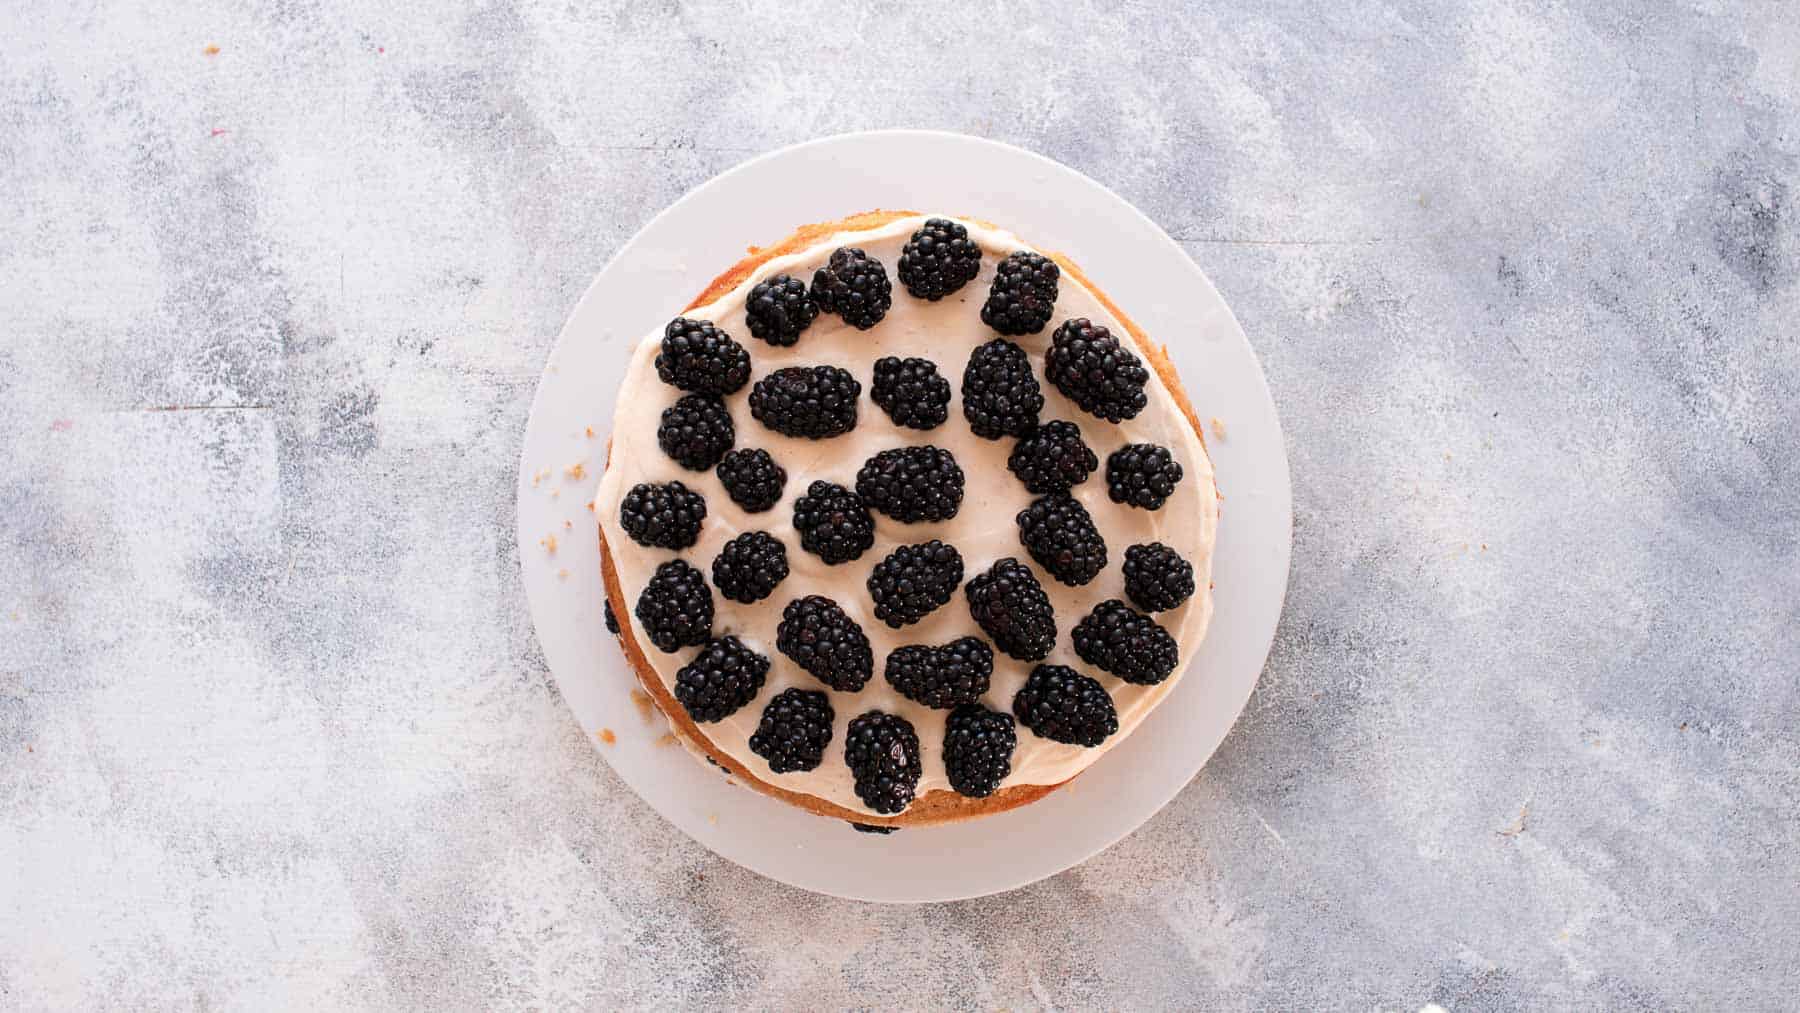 fresh blackberries on top of cake